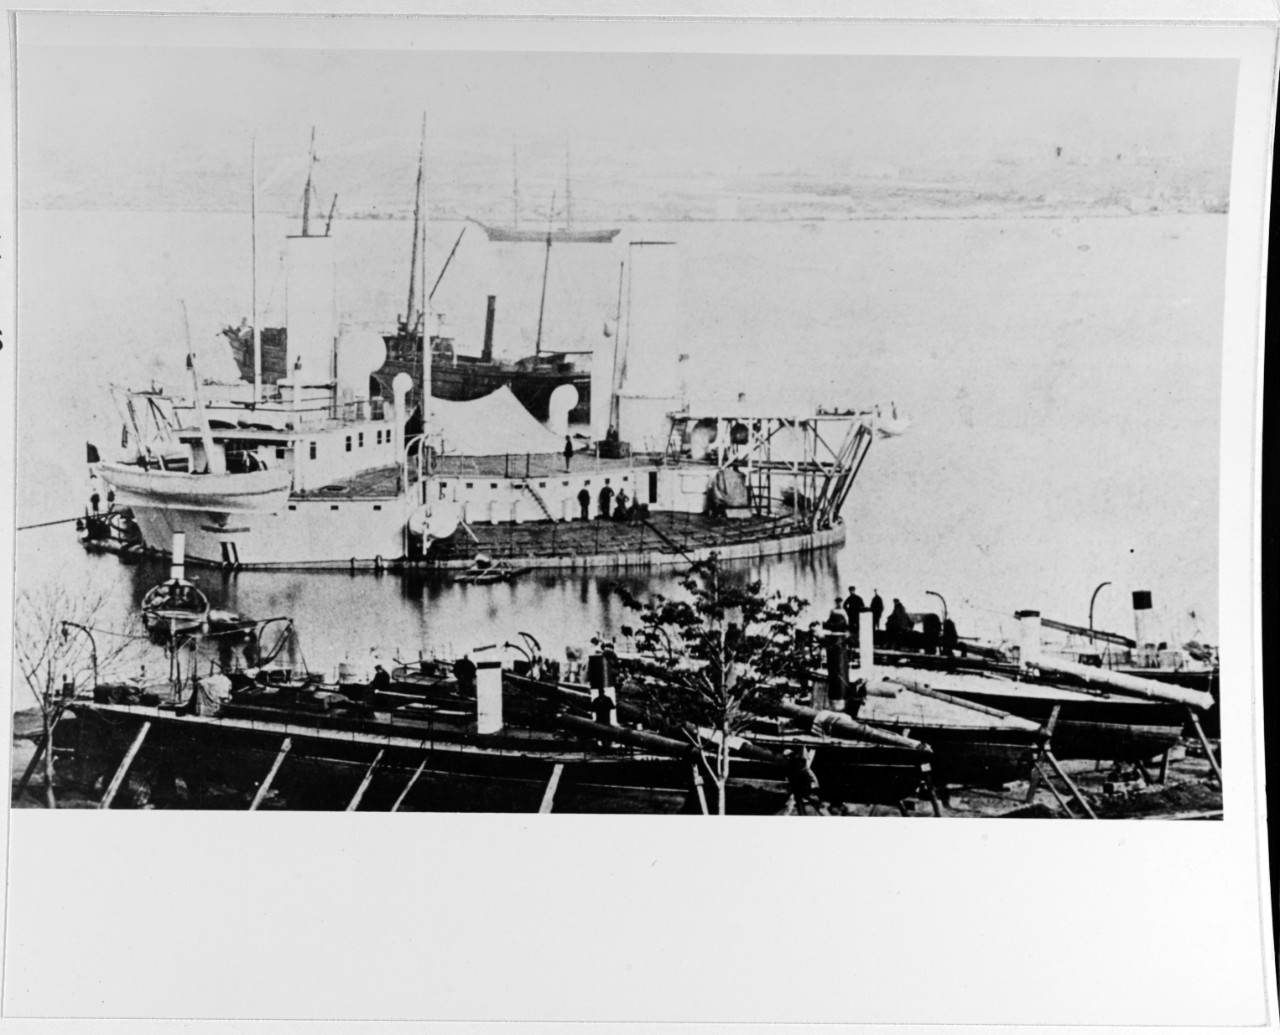 VITSE ADMIRAL POPOV (Russian Coast Defense Ship, 1875-1903)